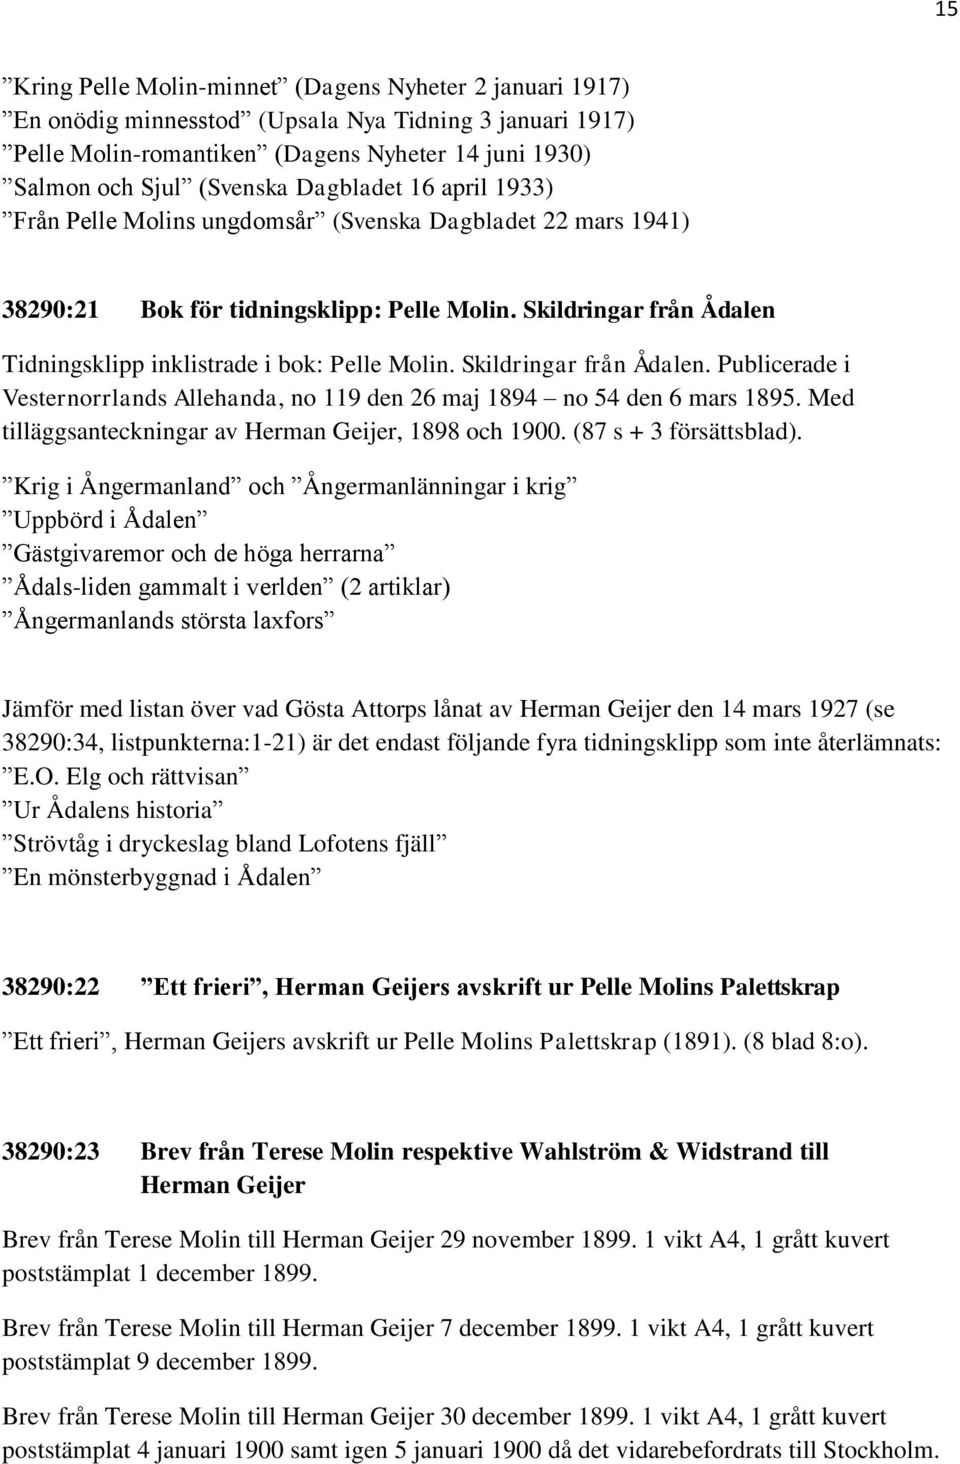 Skildringar från Ådalen. Publicerade i Vesternorrlands Allehanda, no 119 den 26 maj 1894 no 54 den 6 mars 1895. Med tilläggsanteckningar av Herman Geijer, 1898 och 1900. (87 s + 3 försättsblad).